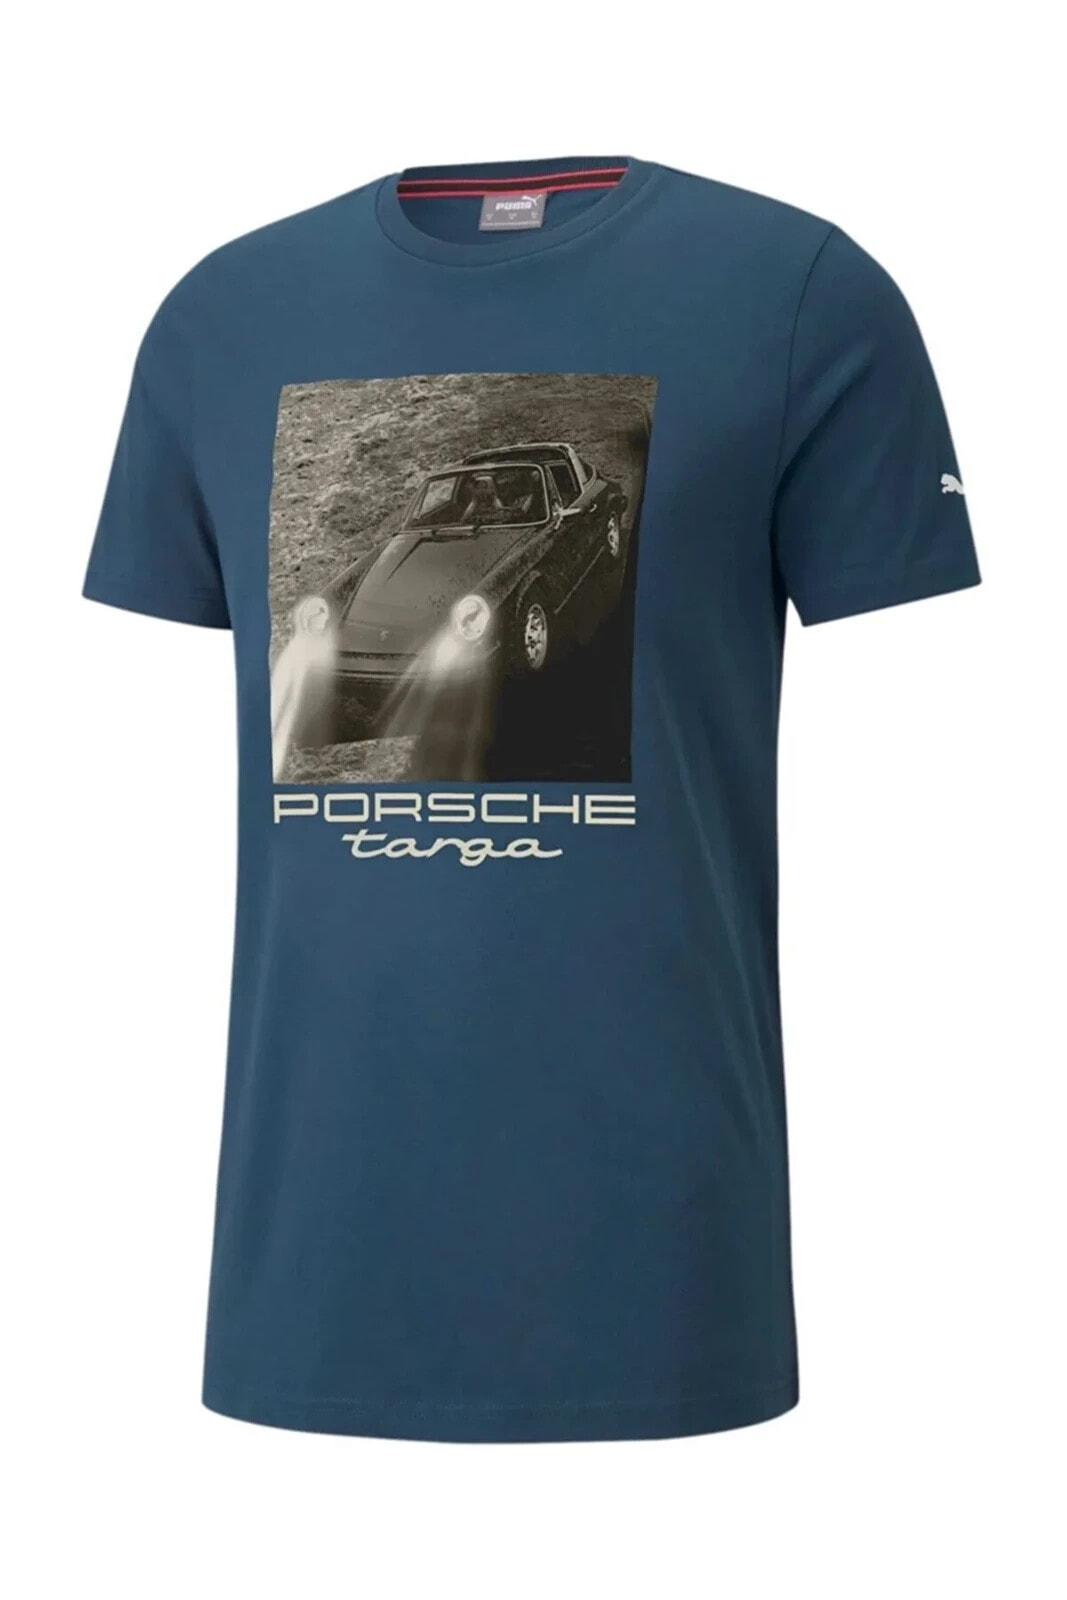 Porsche Legacy Statement Erkek Motorsport T-shirt